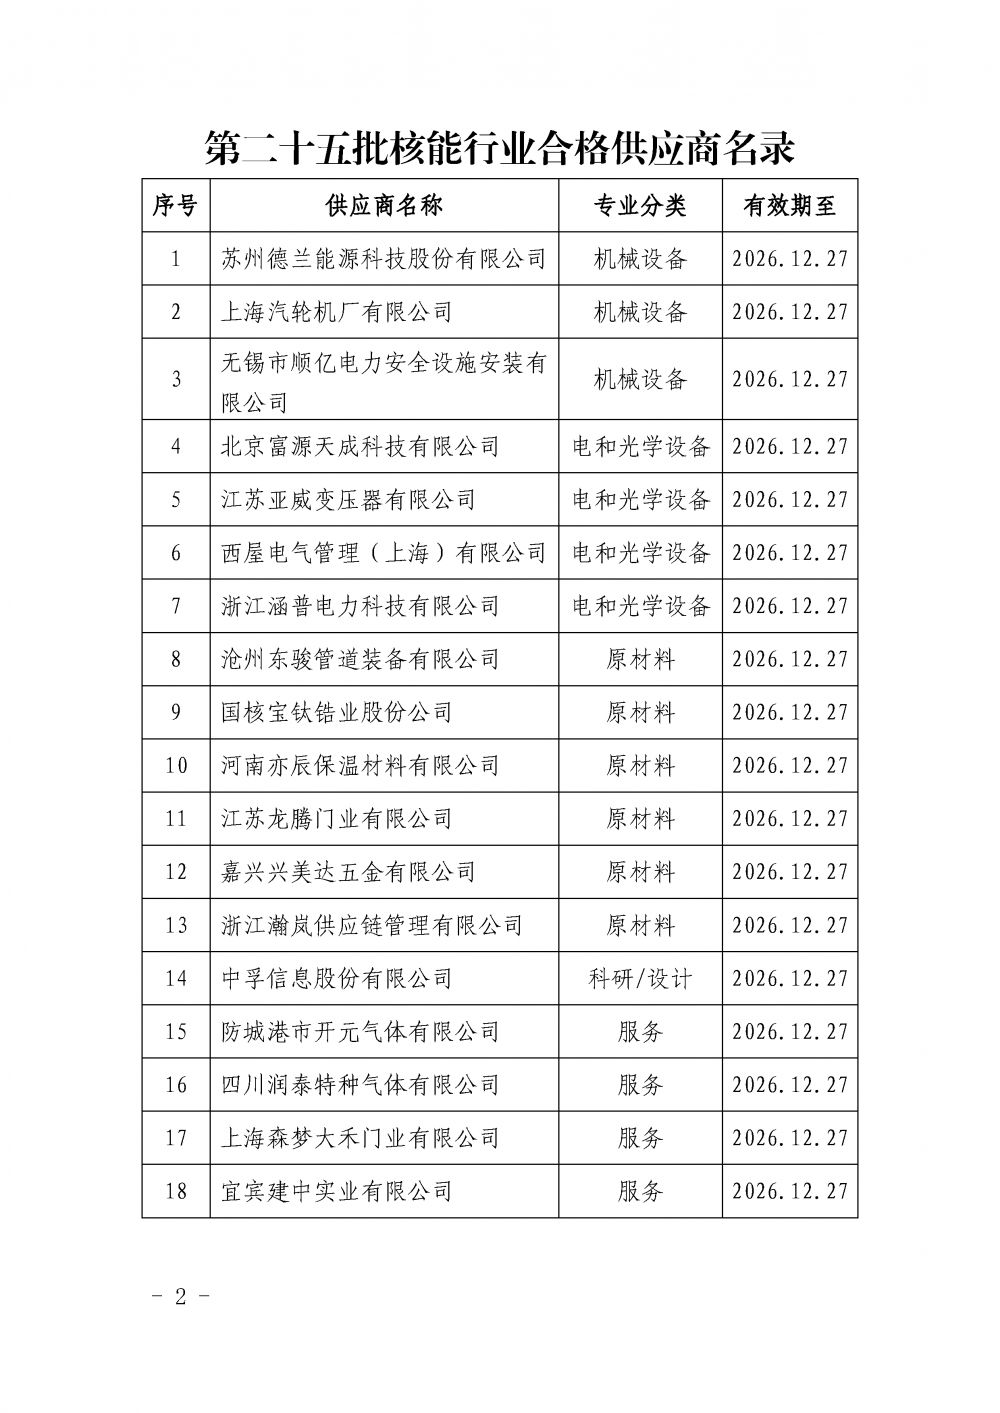 中国核能行业协会关于发布第二十五批核能行业合格供应商名录的公告_页面_2.png